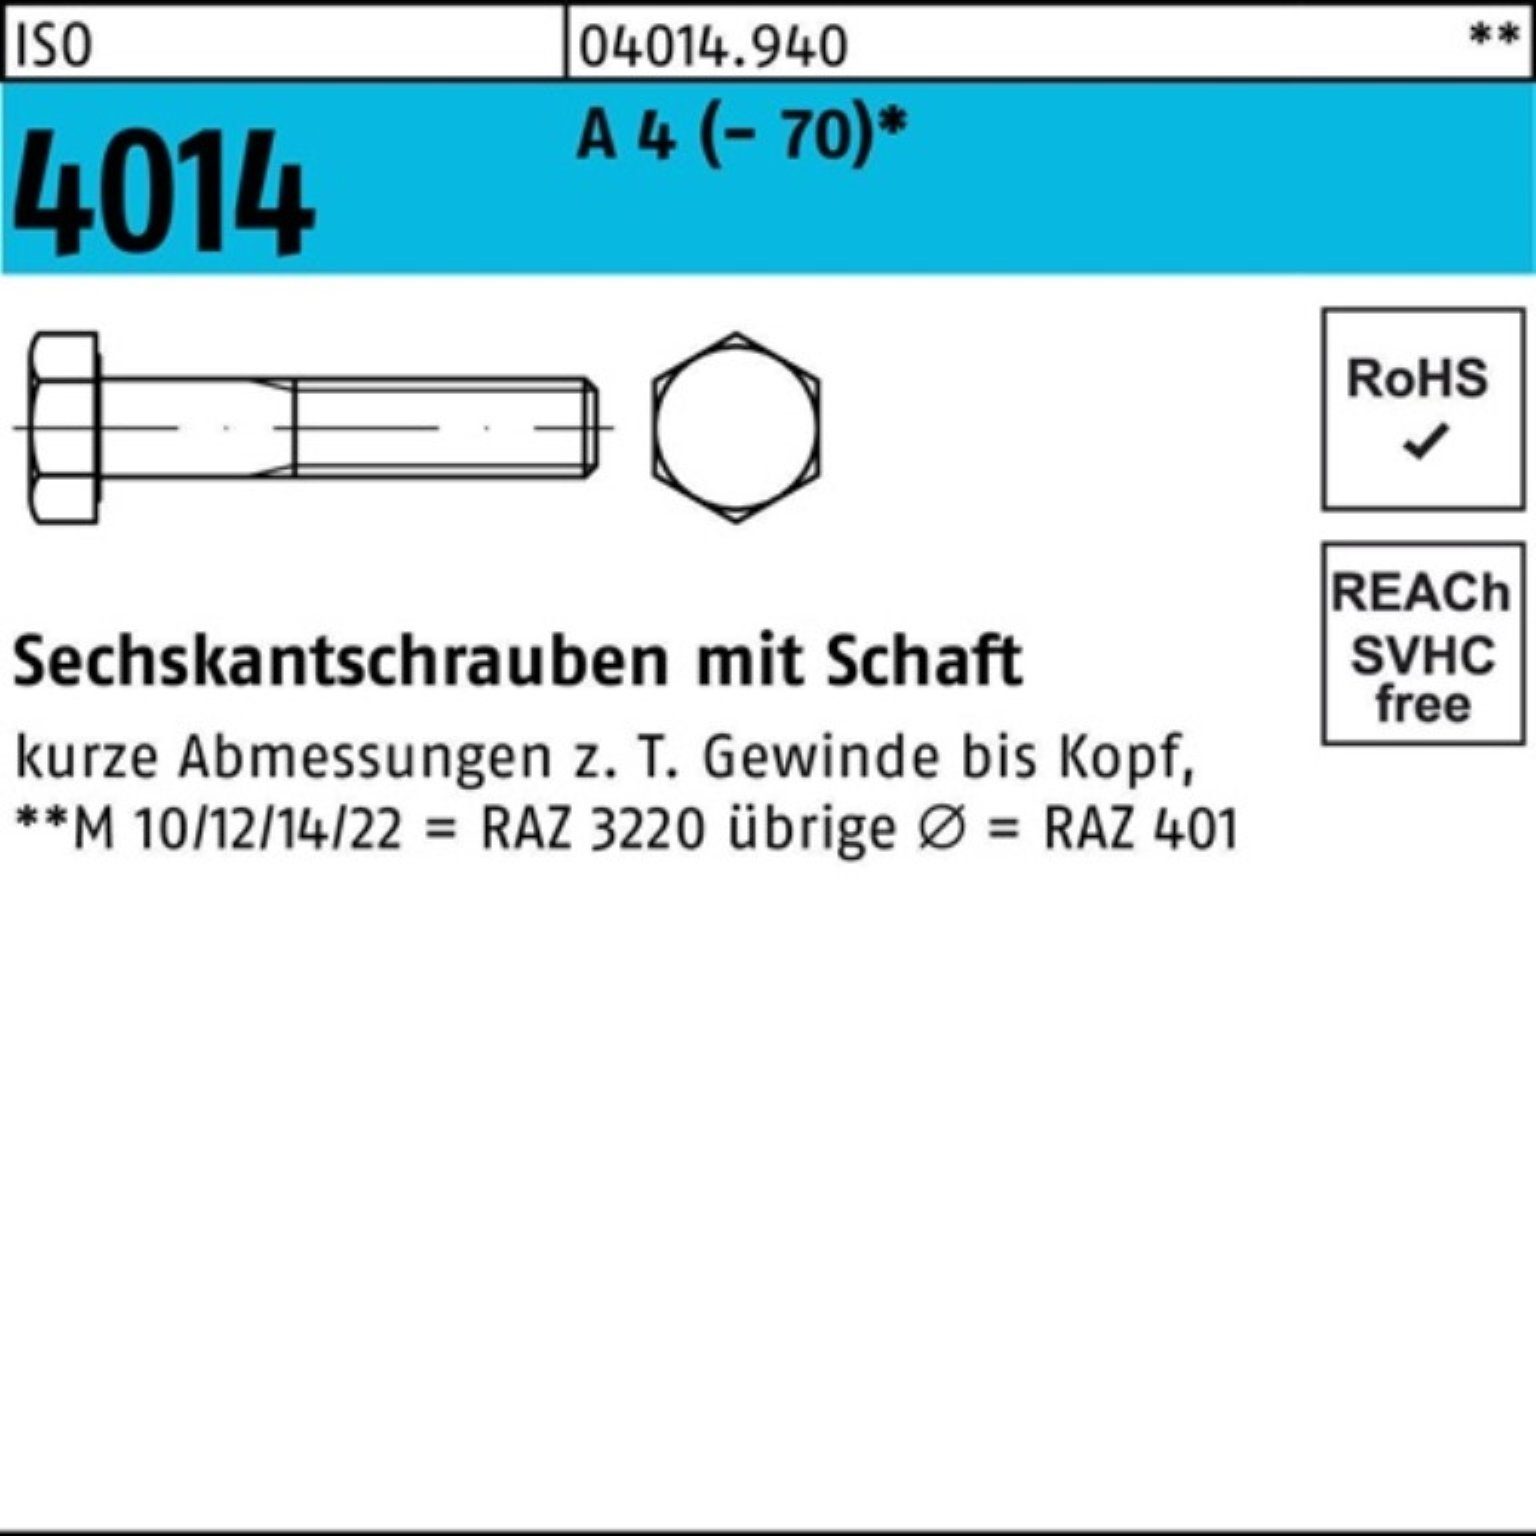 Bufab Sechskantschraube 100er M24x 4014 Schaft Sechskantschraube 190 4 (70) 1 St Pack A ISO